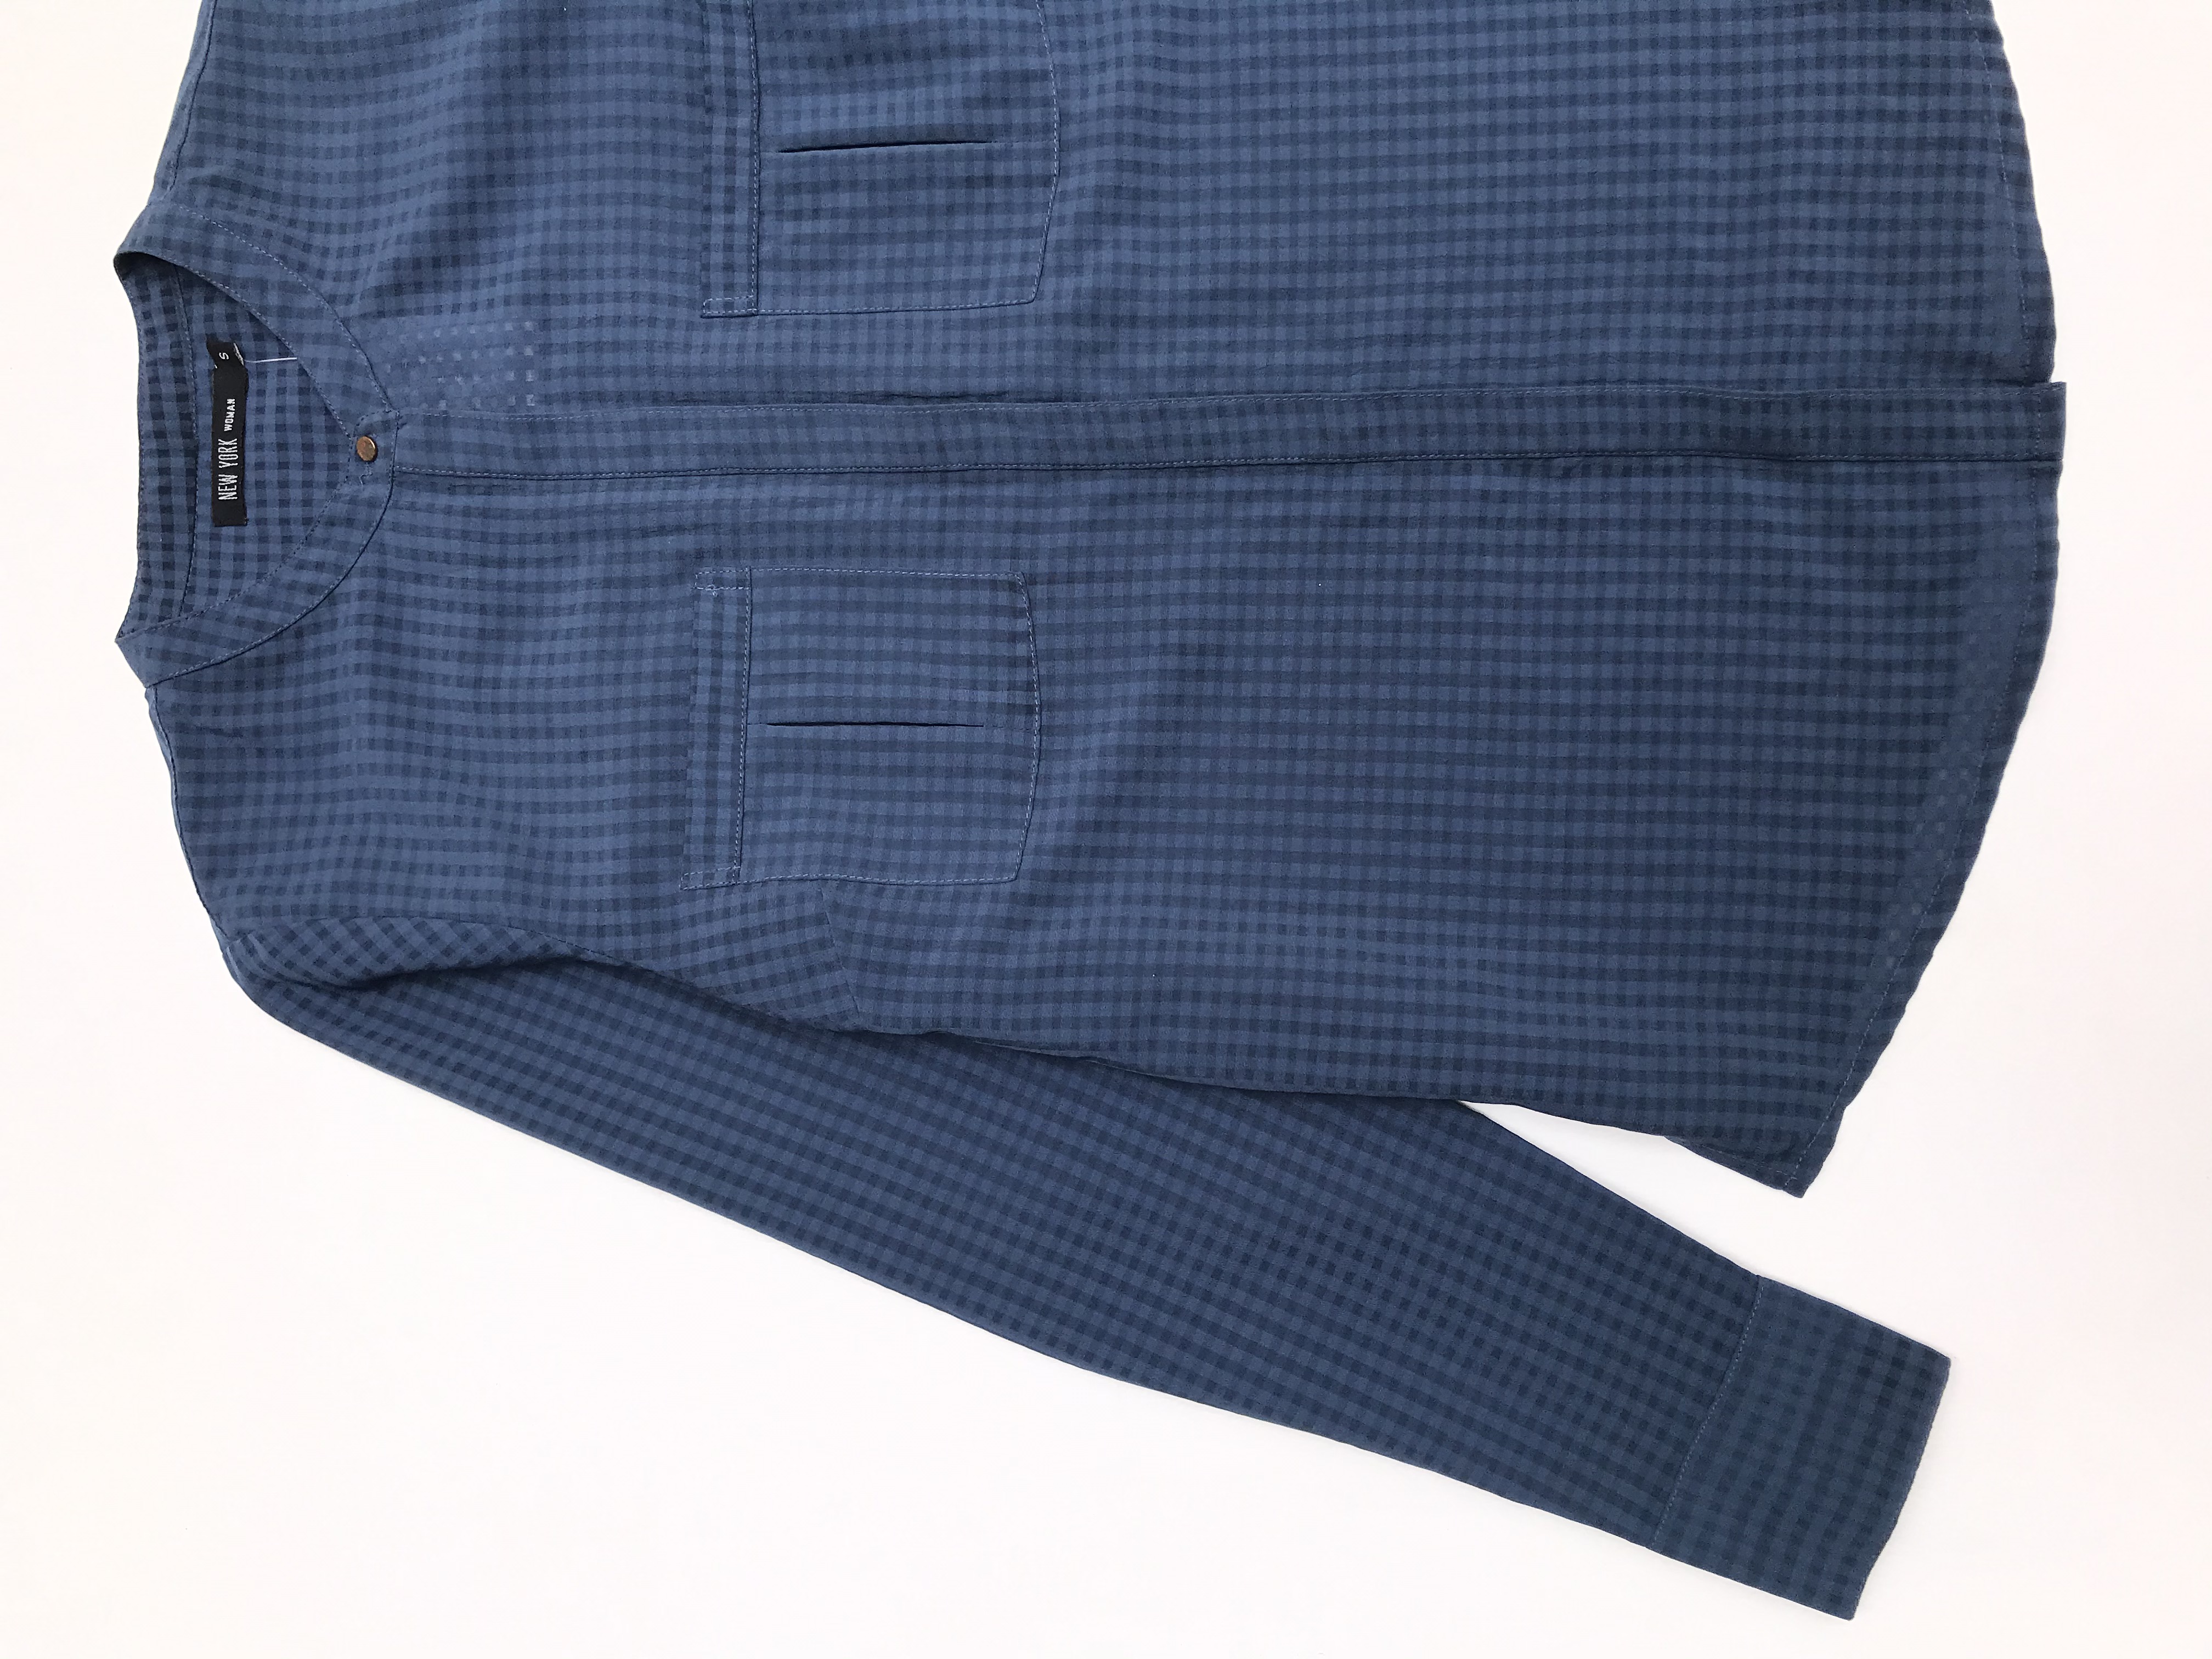 Blusa de cuadros en tonos azules, tela plana, fila de botones y bolsillos delanteros